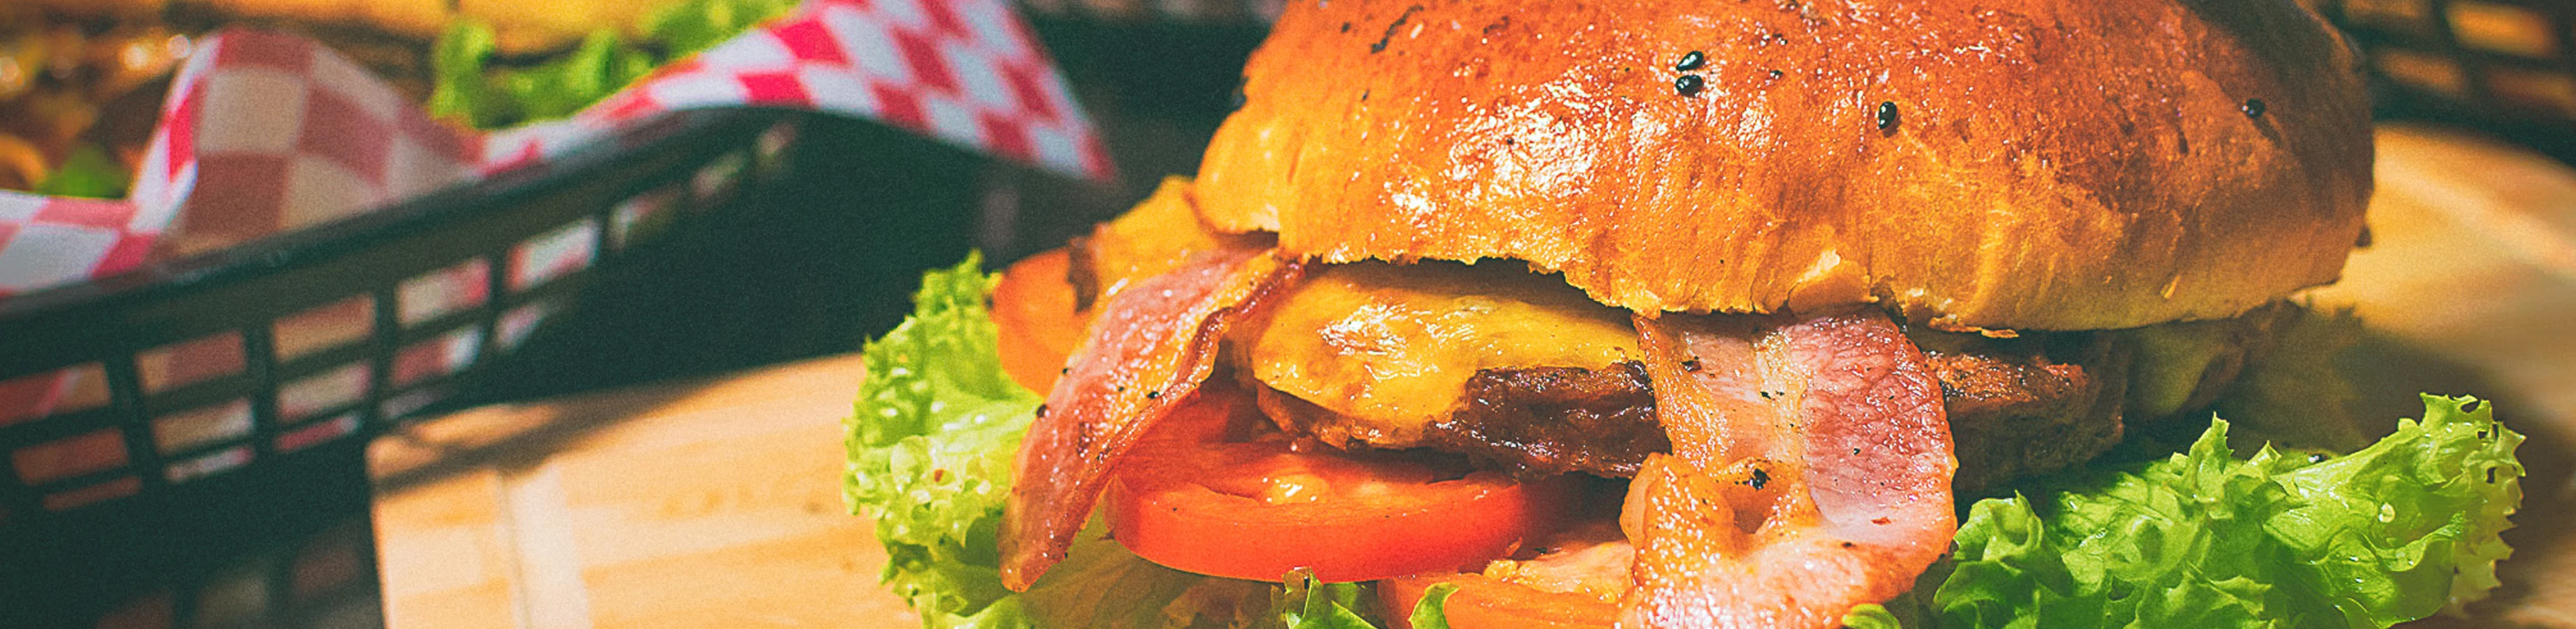 Saftiger Hamburger in einem Restaurant mit Bacoun, Fleisch, Tomaten und Salat belegt